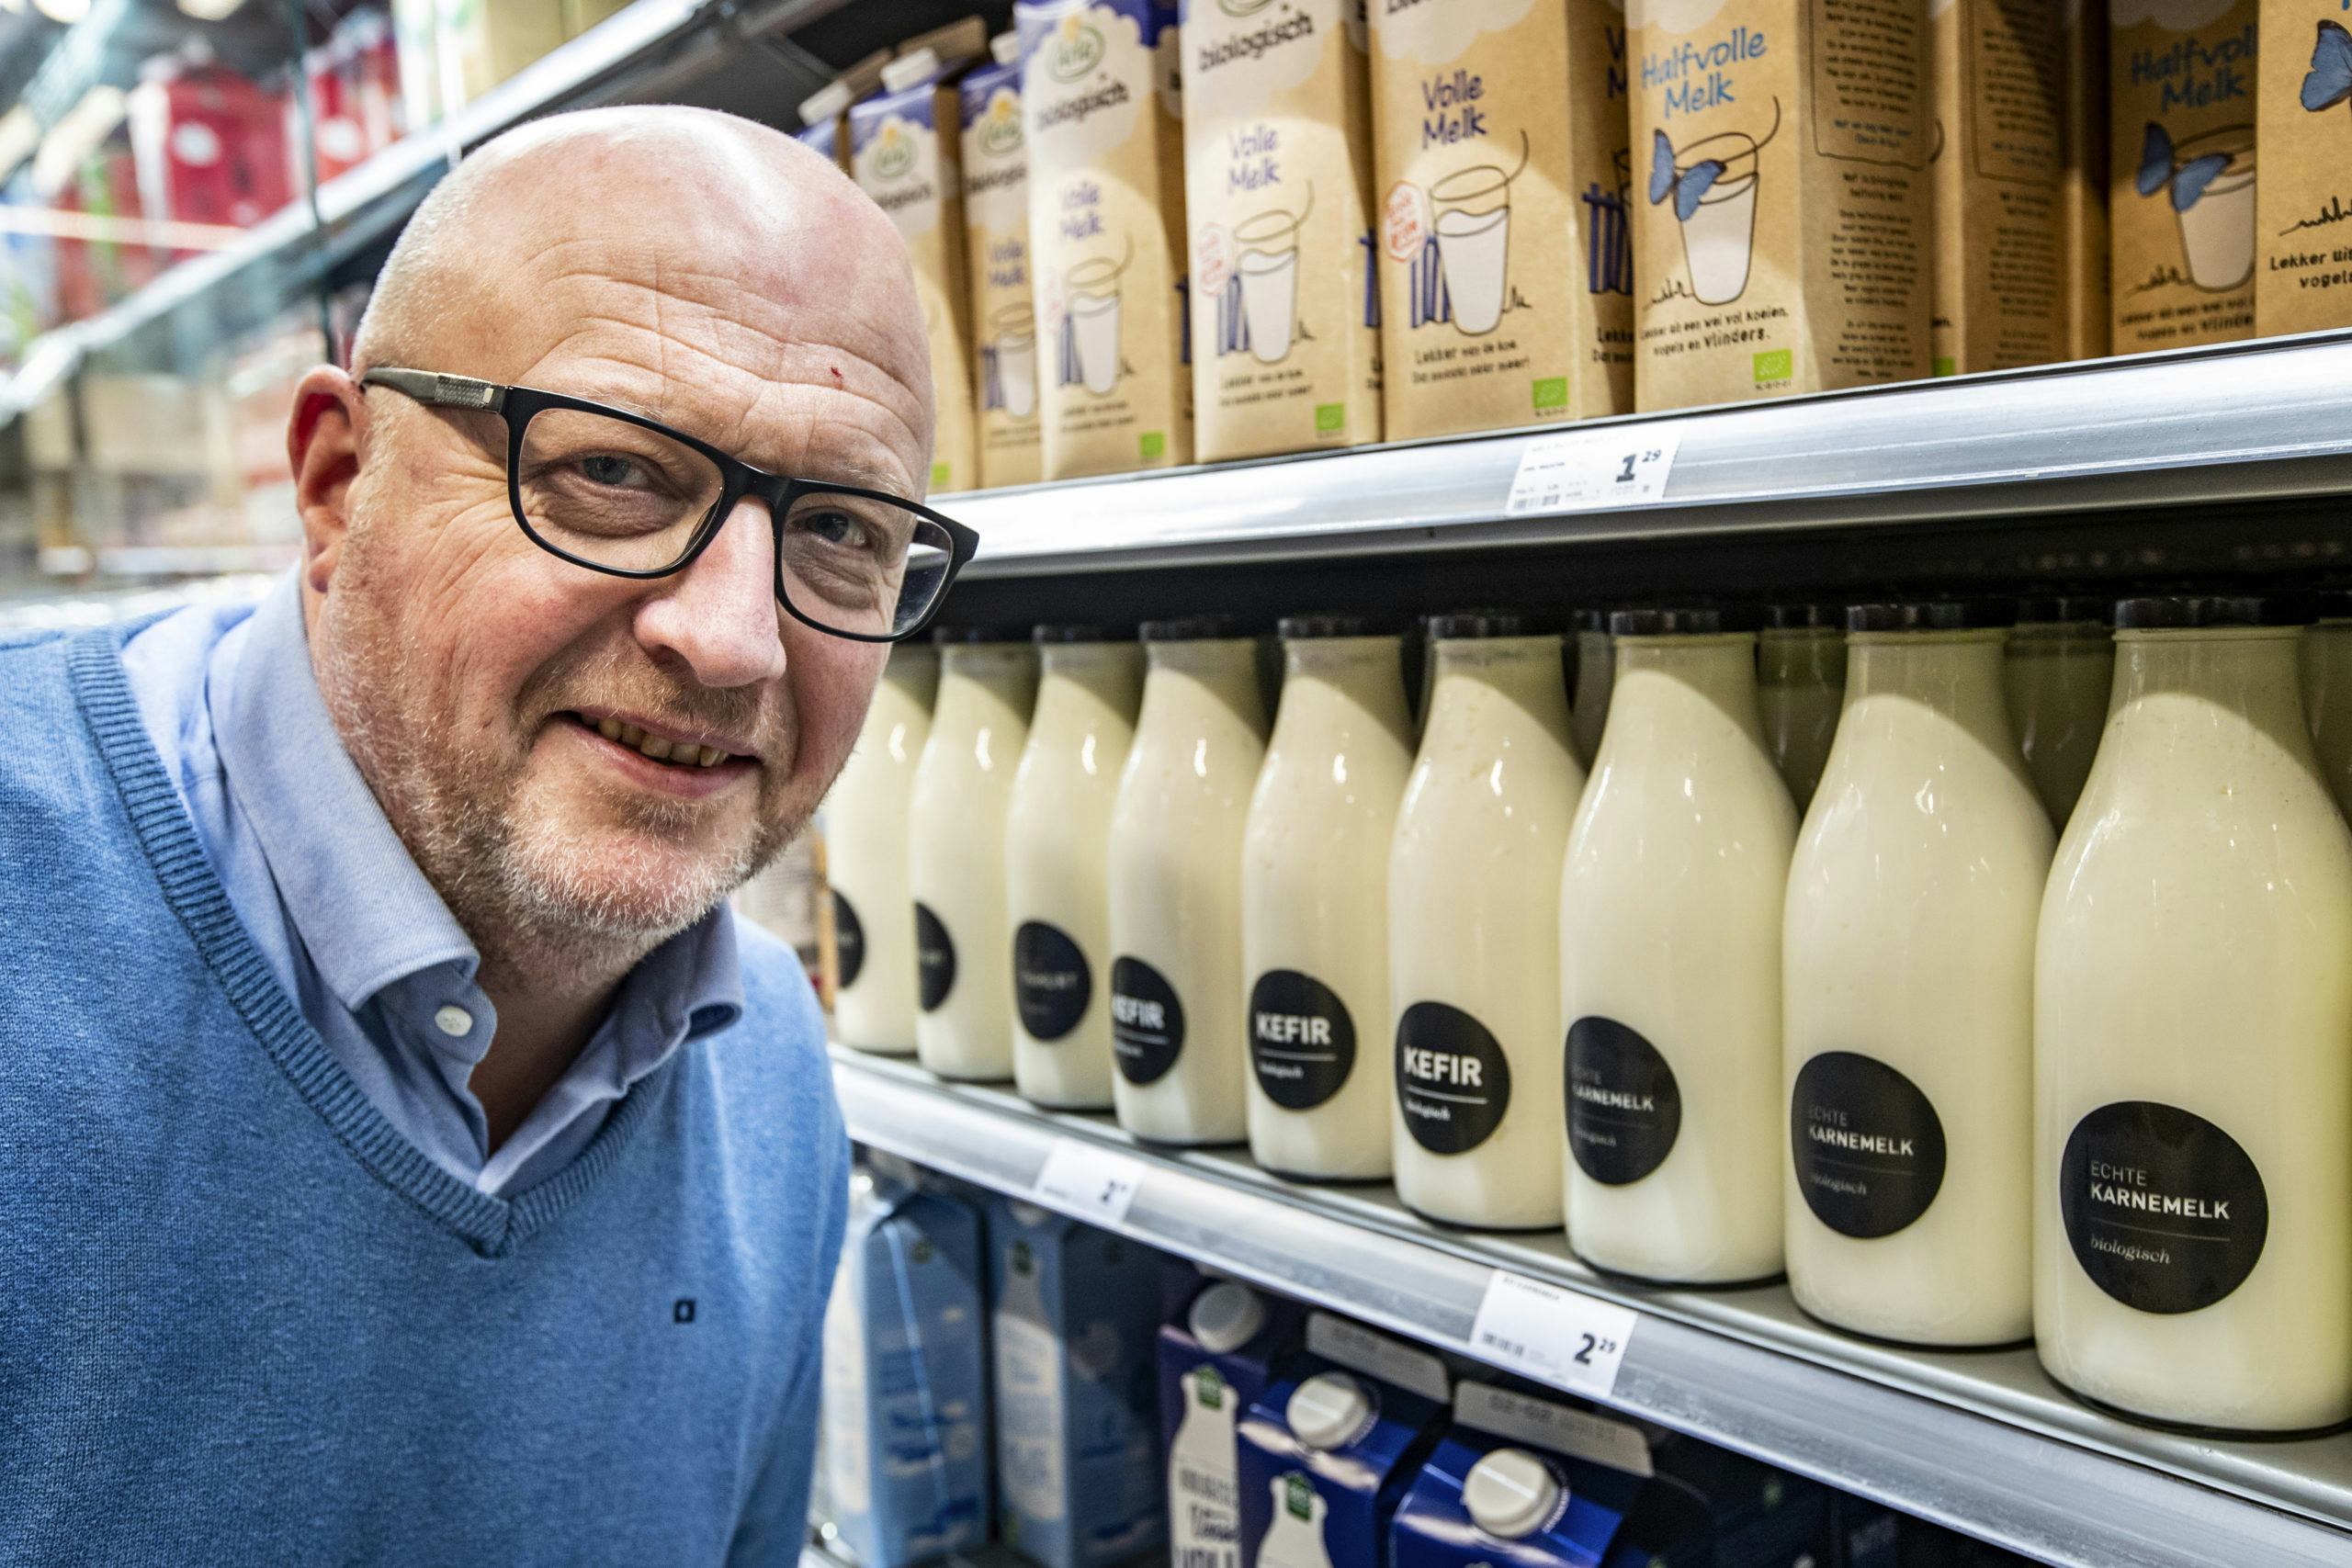 Jumbo-ondernemer Hans Kok voert al lokale merken in zijn supermarkt, maar zet nu in op één gezamenlijk merk dat in de hele winkel zichtbaar is. Foto: Fotobureau Hissink